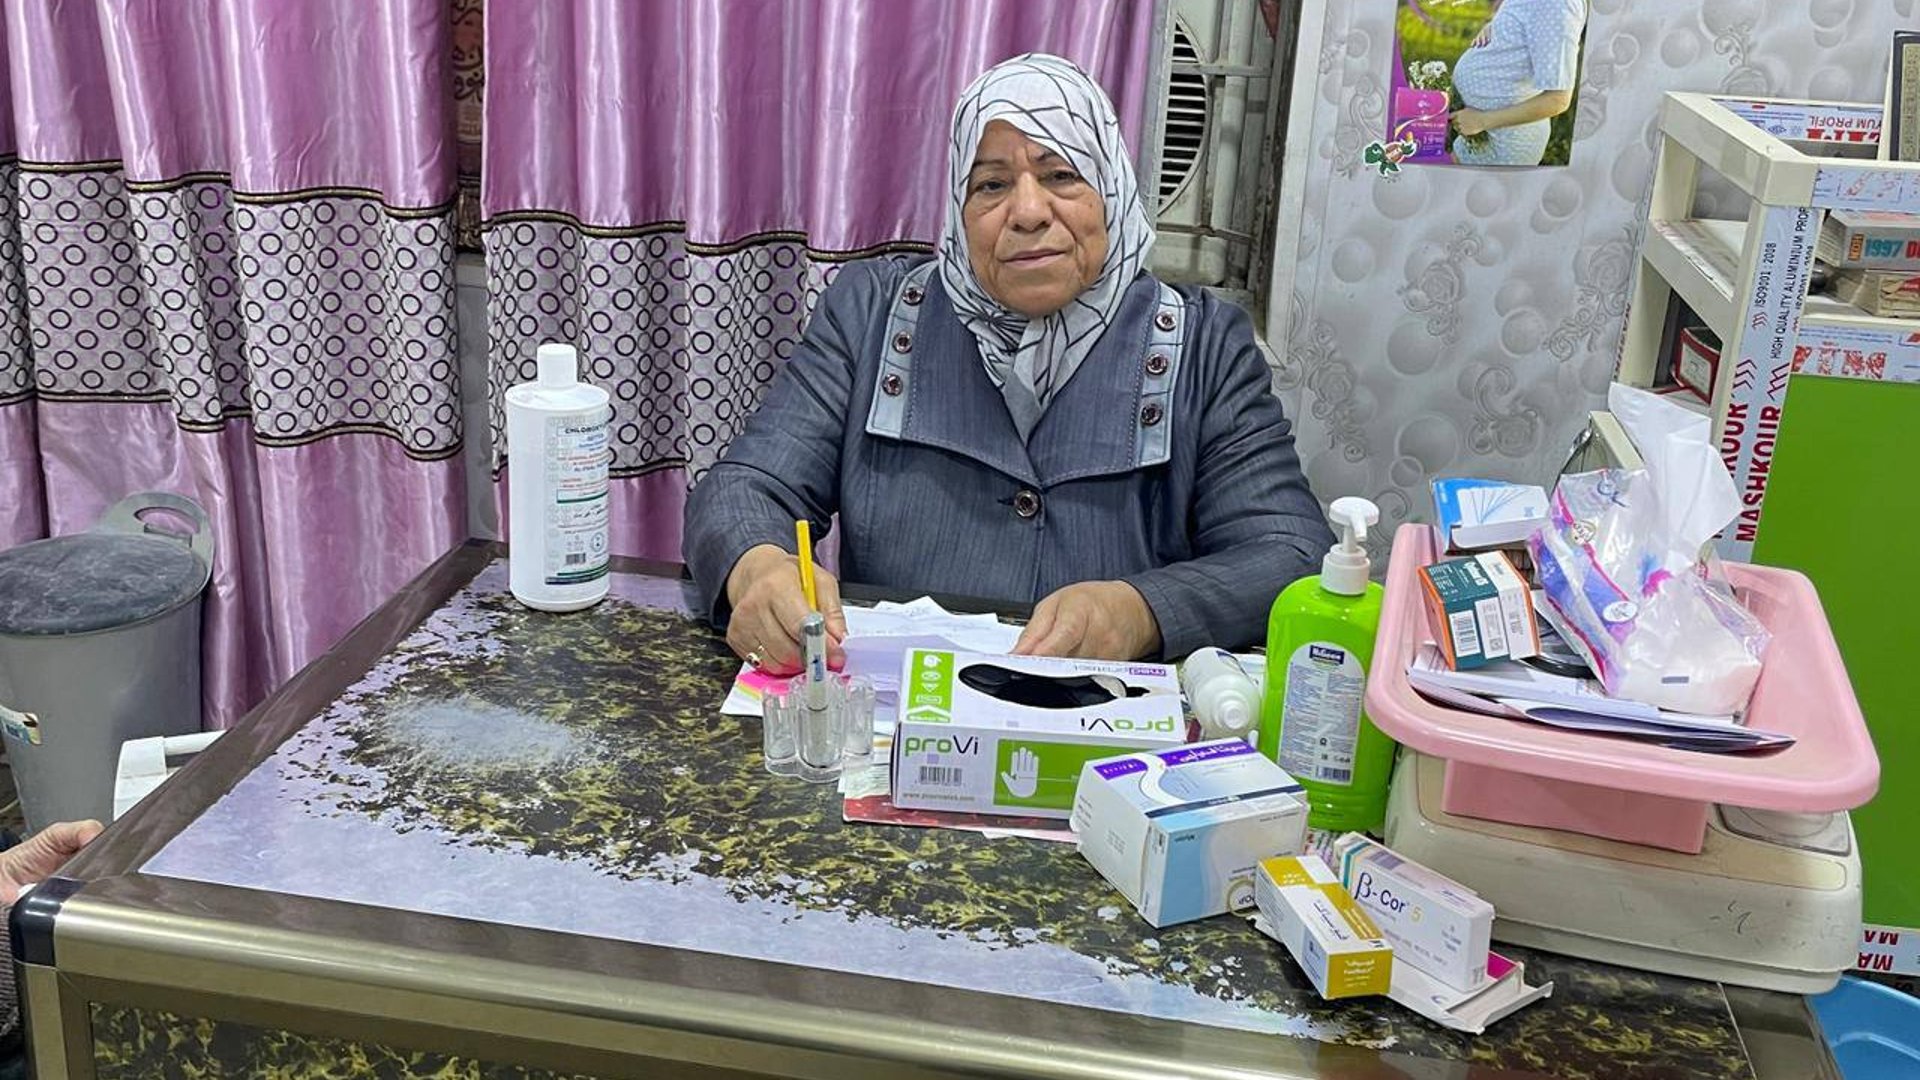 دكتورة مسعودة.. طبيبة في الفلوجة تستقبل مريضات الأنبار مجاناً وتتكفل حتى بالعلاج